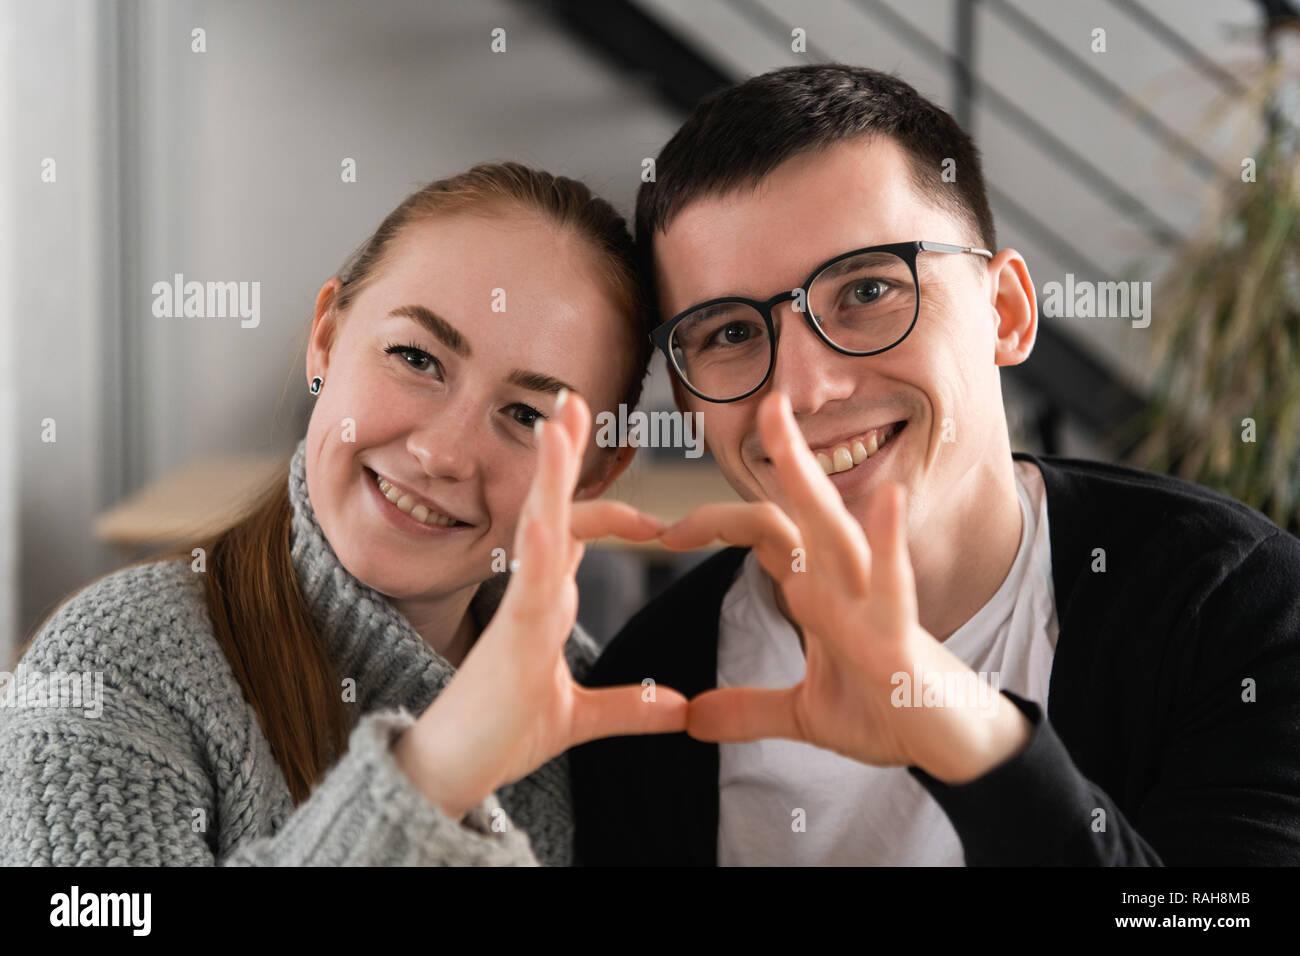 Gros plan du couple avec les mains en forme de coeur Banque D'Images